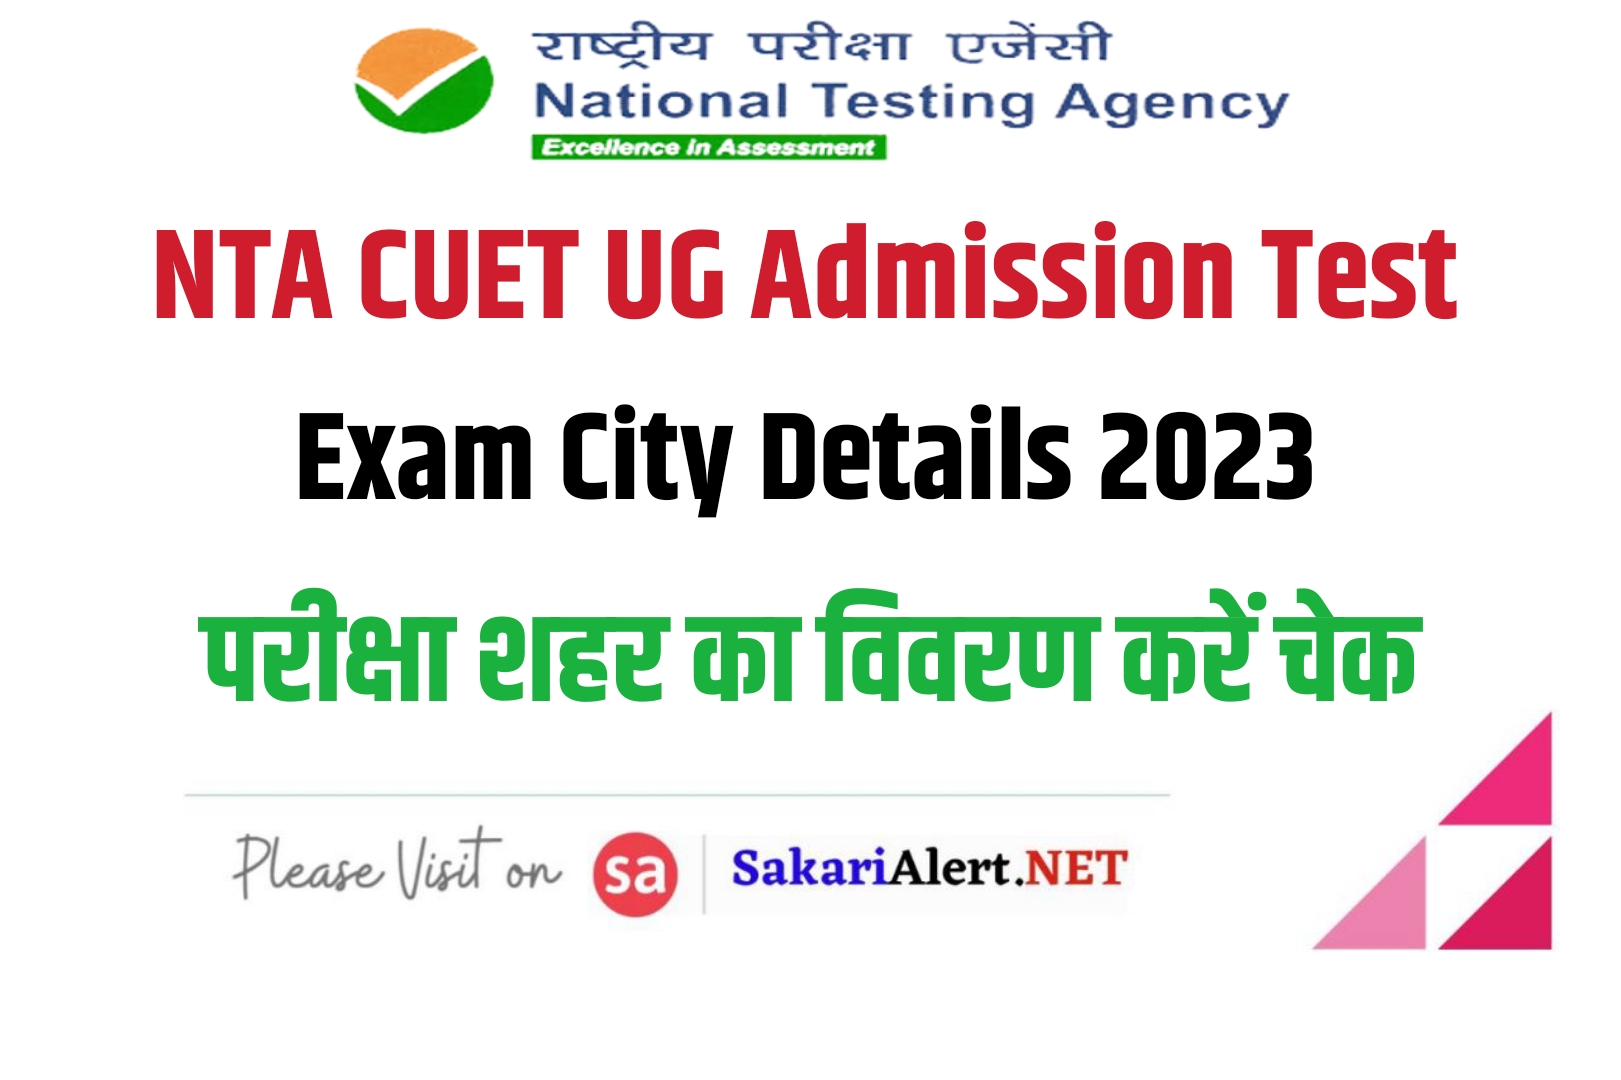 NTA CUET UG Admission Test Exam City Details 2023 | एनटीए सीयूईटी यूजी एडमिशन टेस्ट परीक्षा शहर विवरण